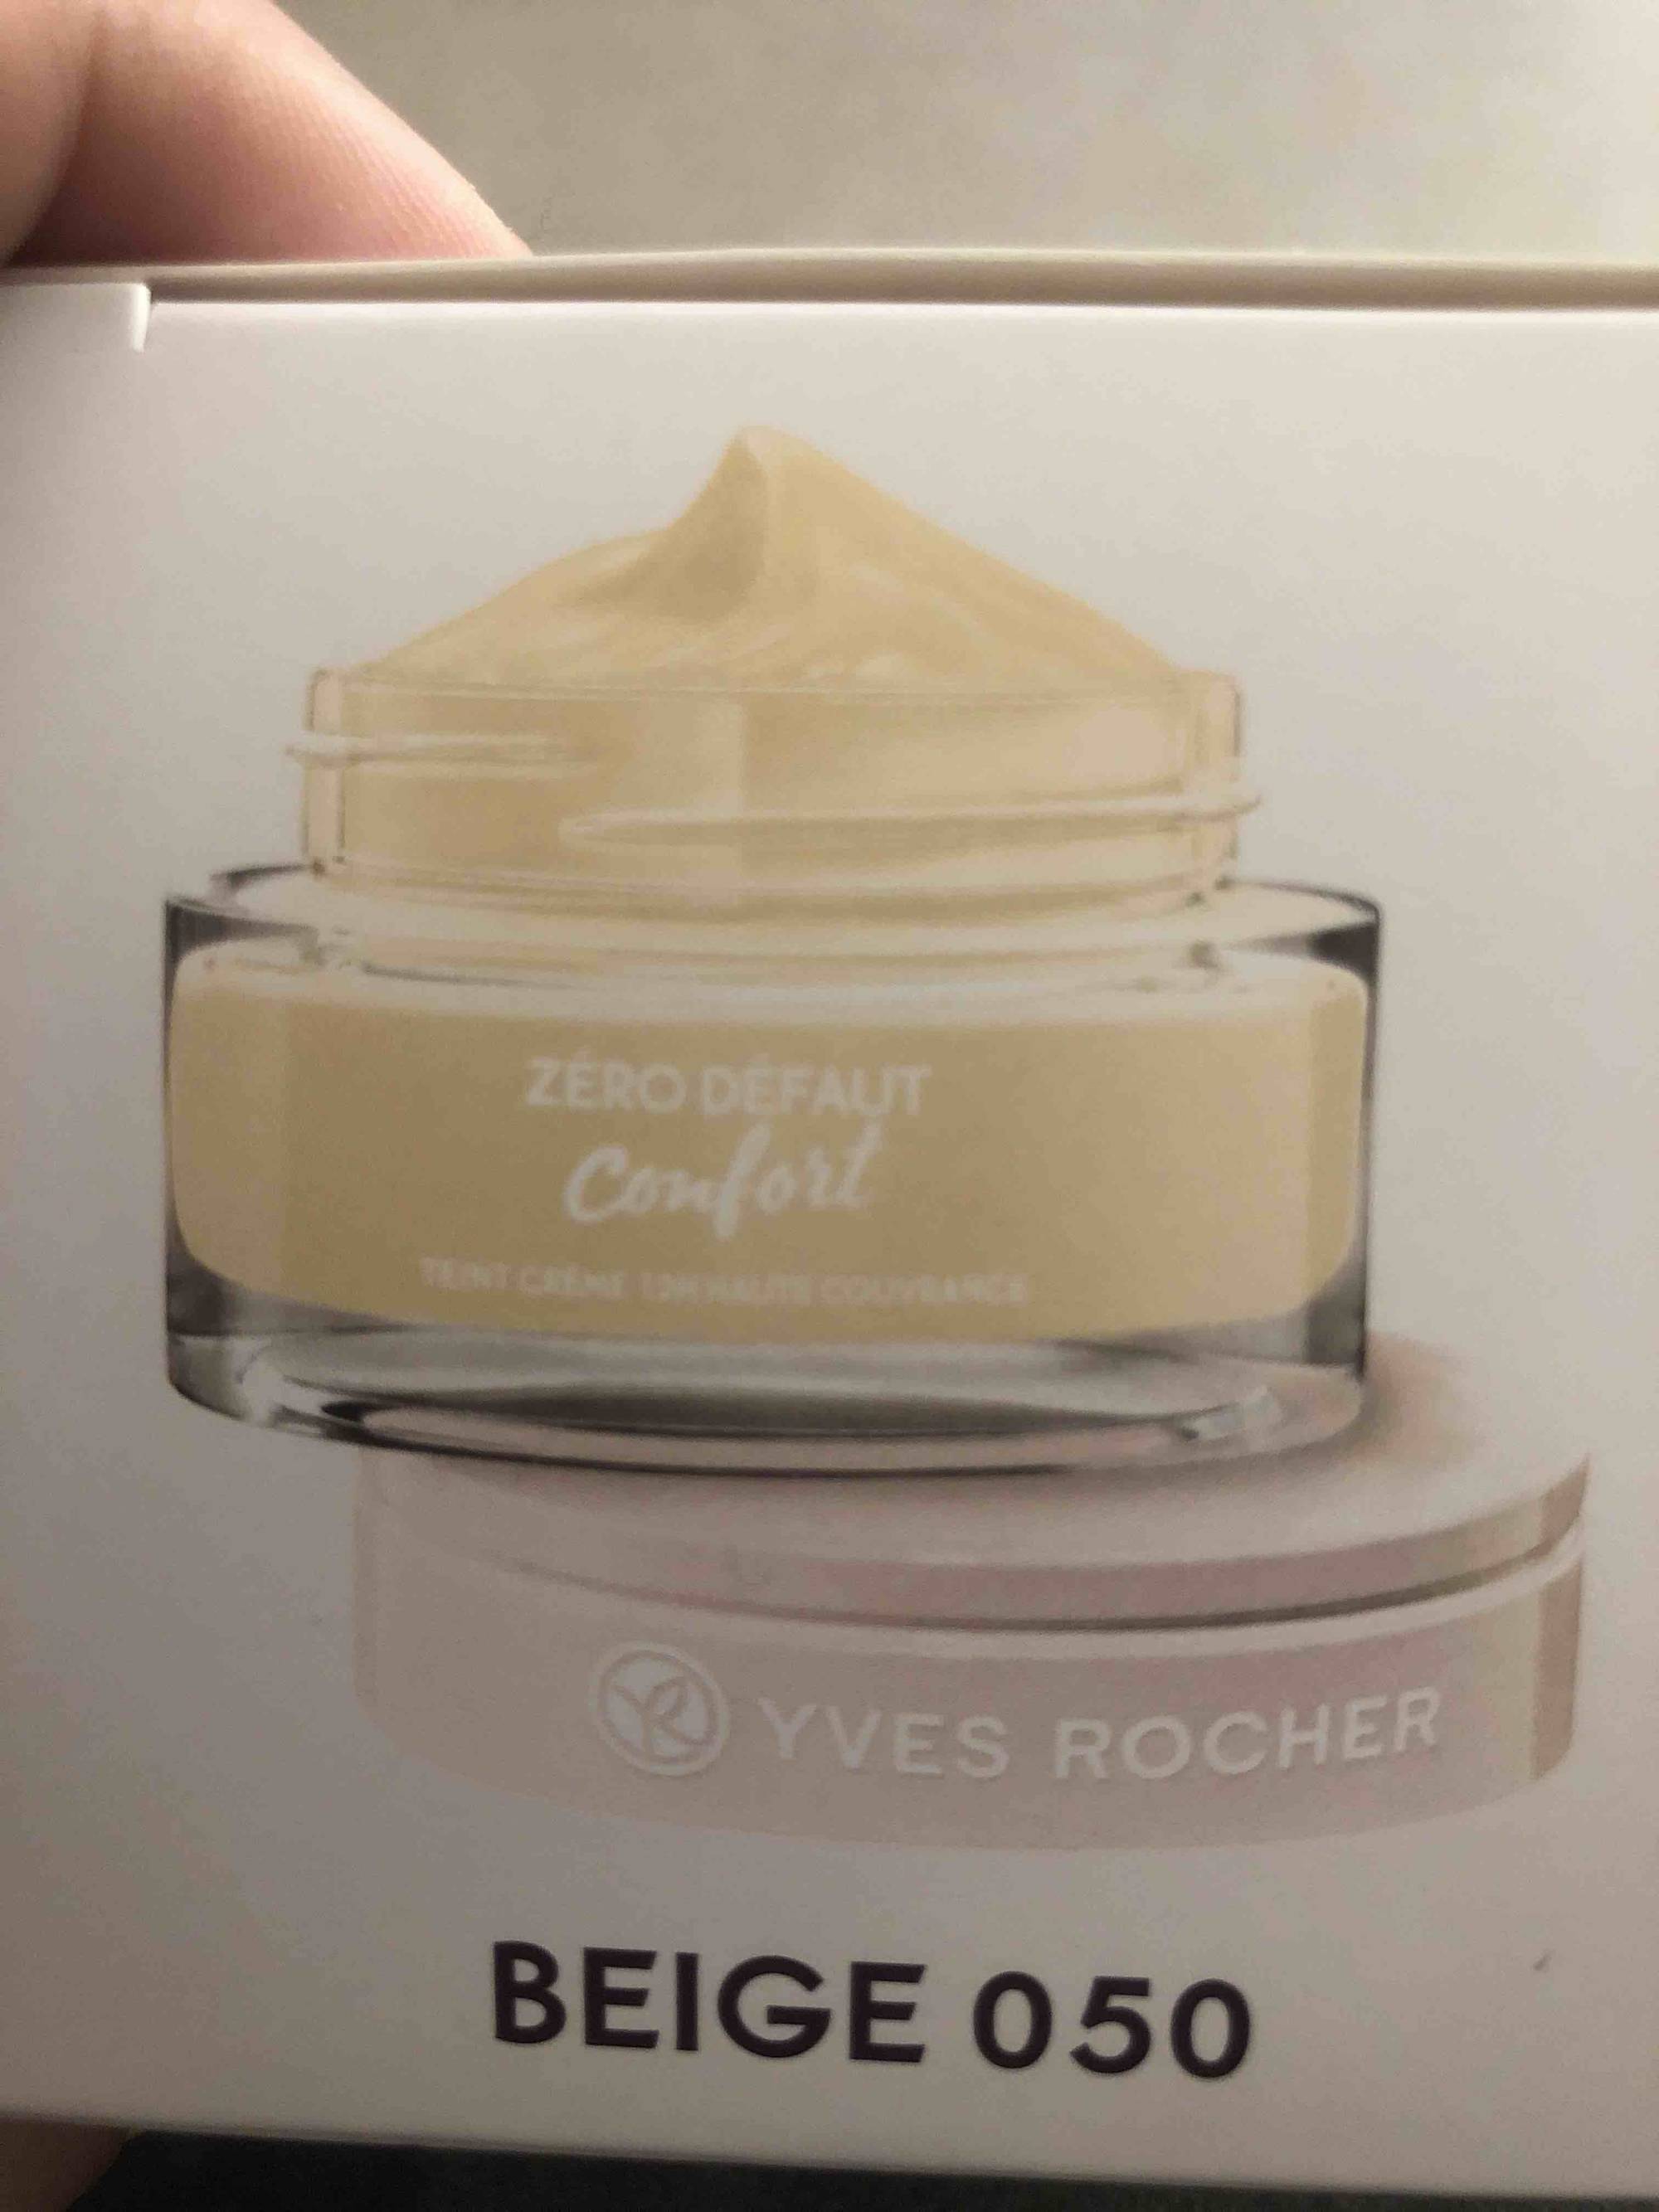 YVES ROCHER - Zéro défaut confort - Teint crème haut beige 050